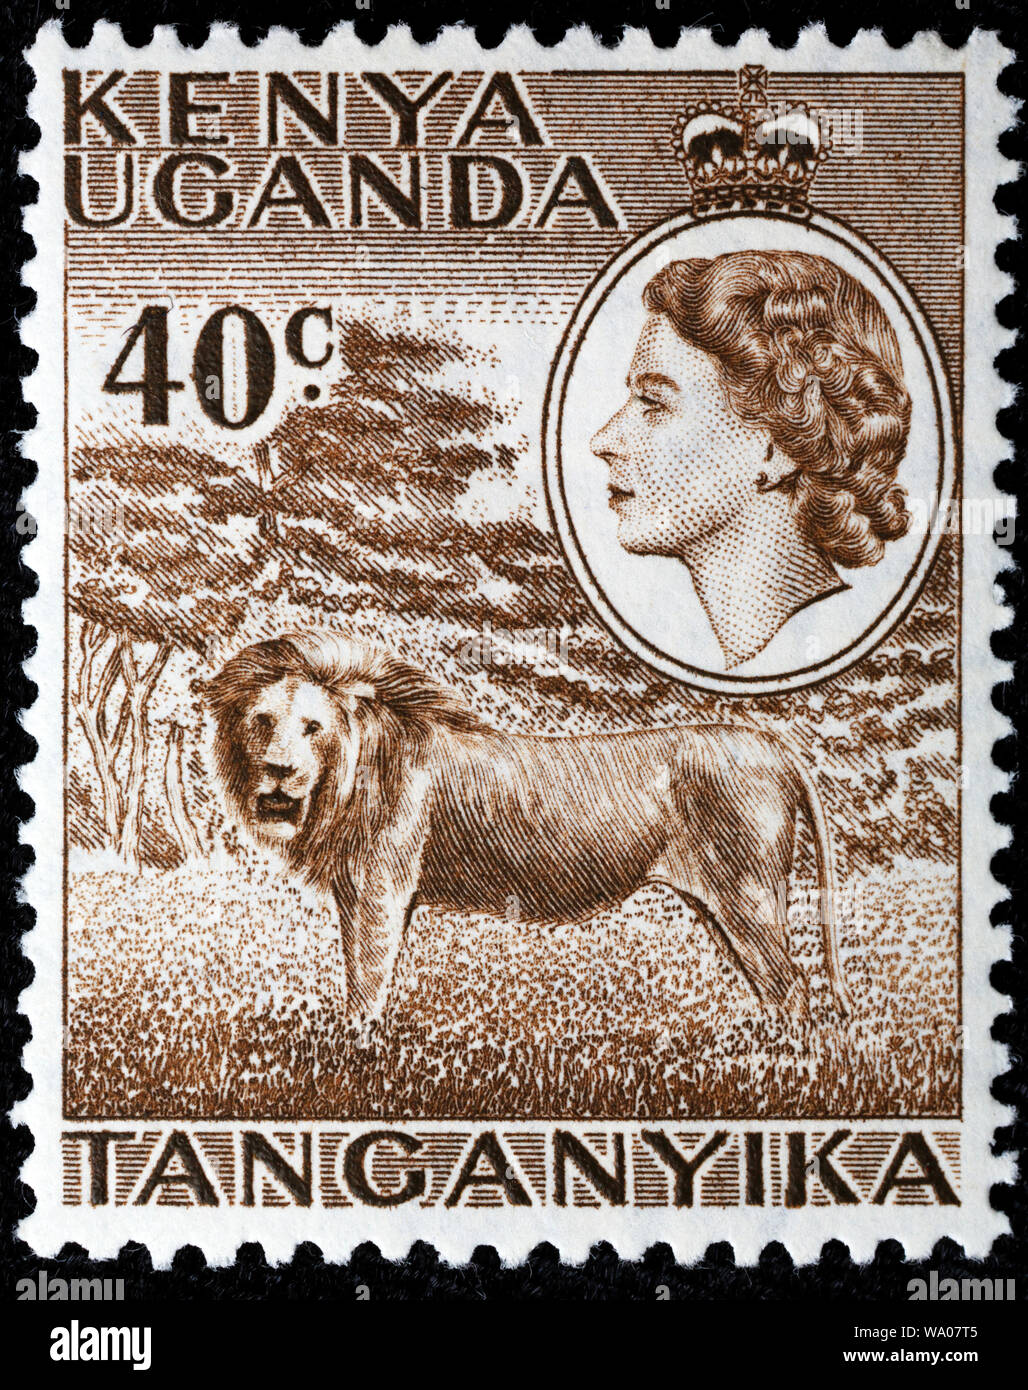 Lion, Panthera leo, postage stamp, British East Africa, Kenya, Uganda, Tanganyika, 1958 Stock Photo